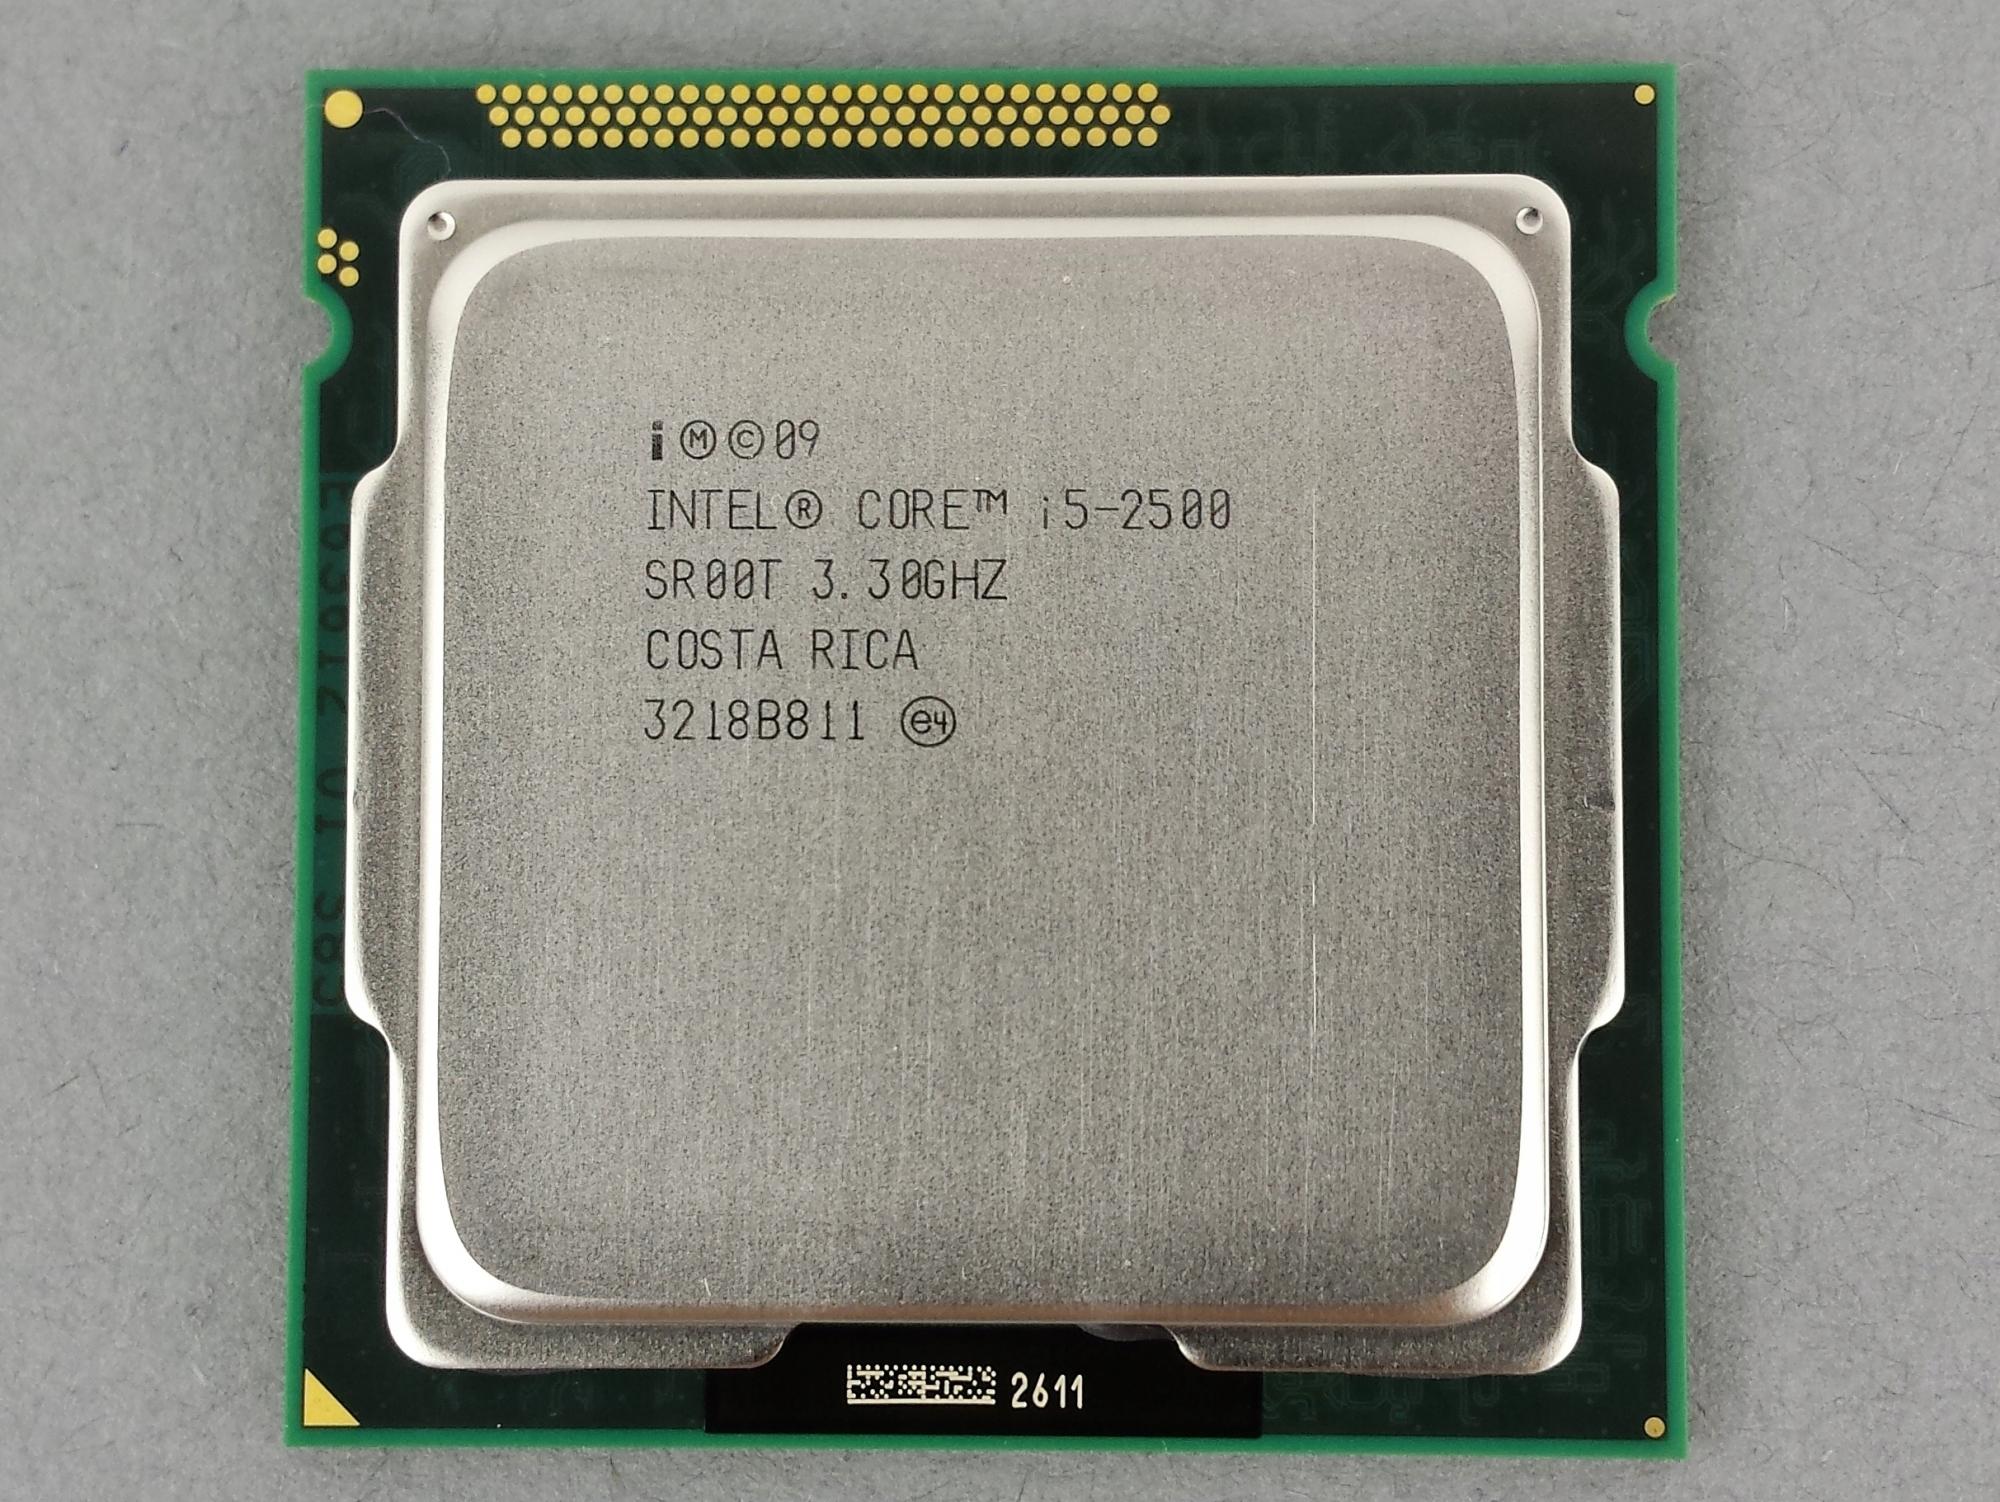 I5 12450h 3.3 ггц. Intel Core i7-2600 Sandy Bridge lga1155, 4 x 3400 МГЦ. Intel Core i5-2500 3.3 ГГЦ. Intel(r) Core(TM) i5-2500 CPU @ 3.30GHZ 3.30 GH. Core i5-2500 lga1155 3.3 ГГЦ/1+6мб (.